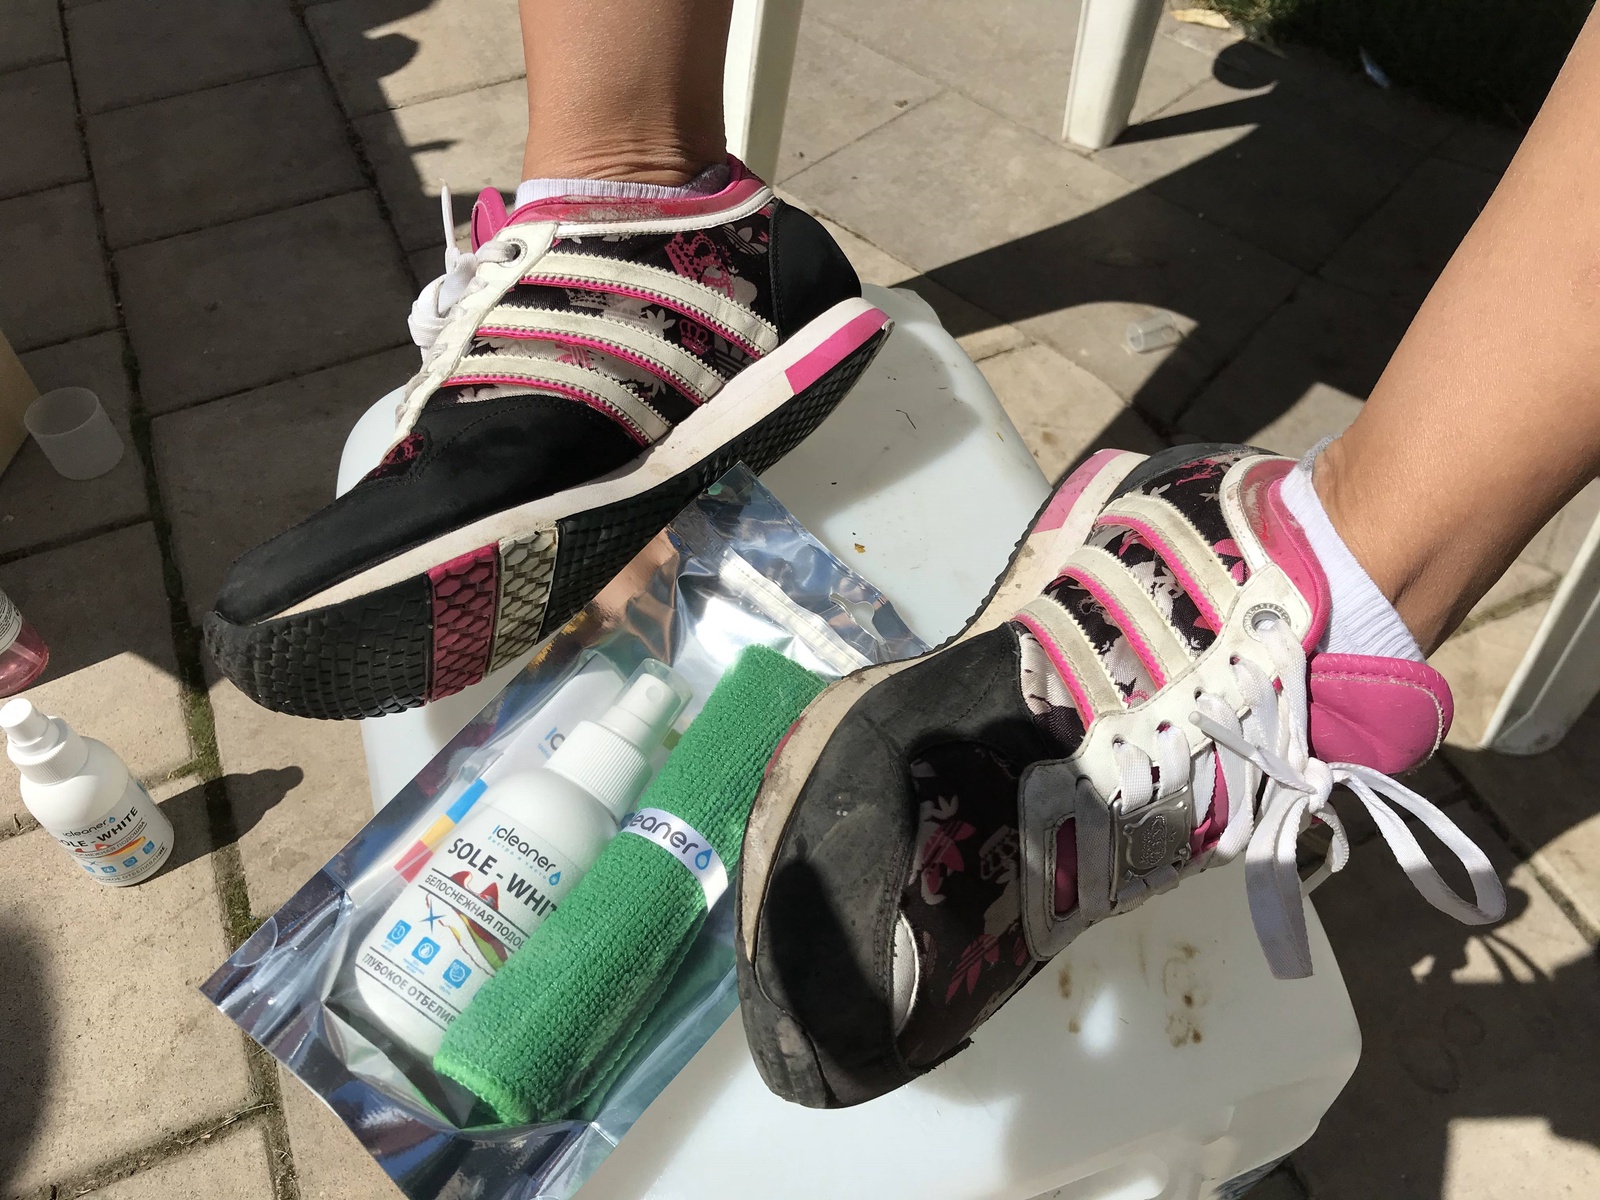 фото Спрей - очиститель для ухода за обувью iCleaner "Sole-White" для чистоты белой подошвы, 100 мл, Россия